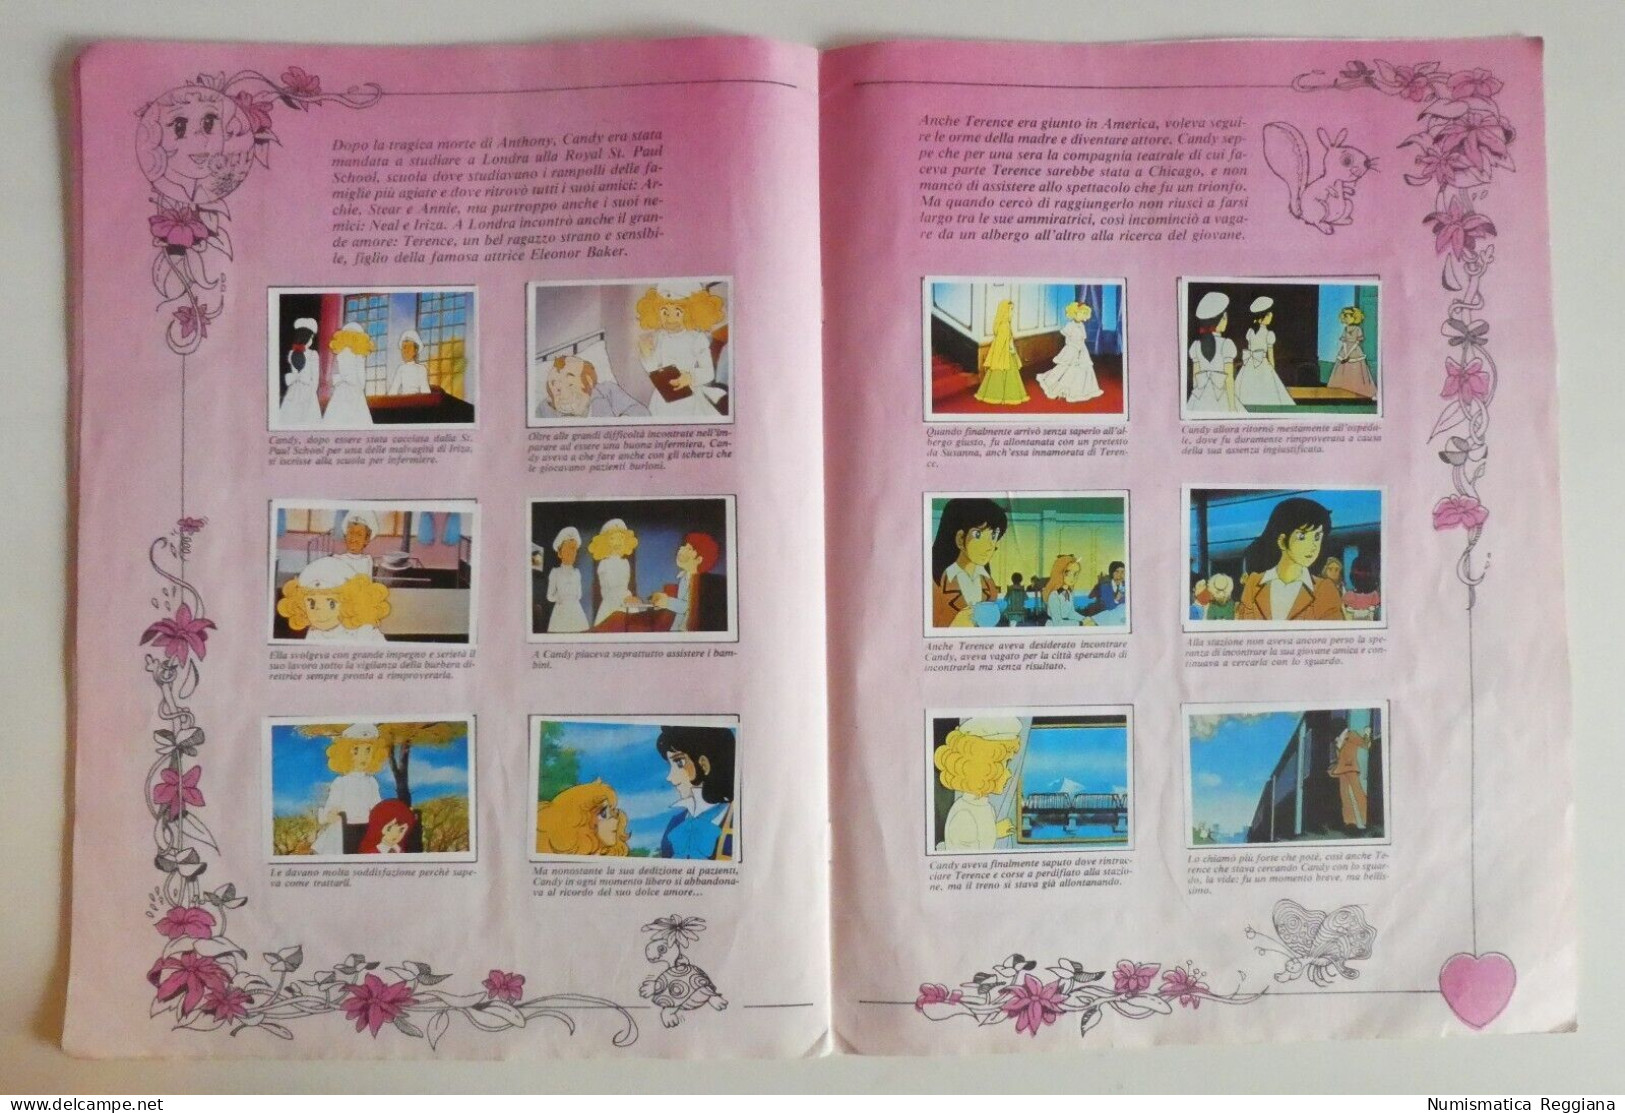 Edizioni Blu - Rarissimo album figurine Candy Candy 1985 Solo 4 mancanti su 191